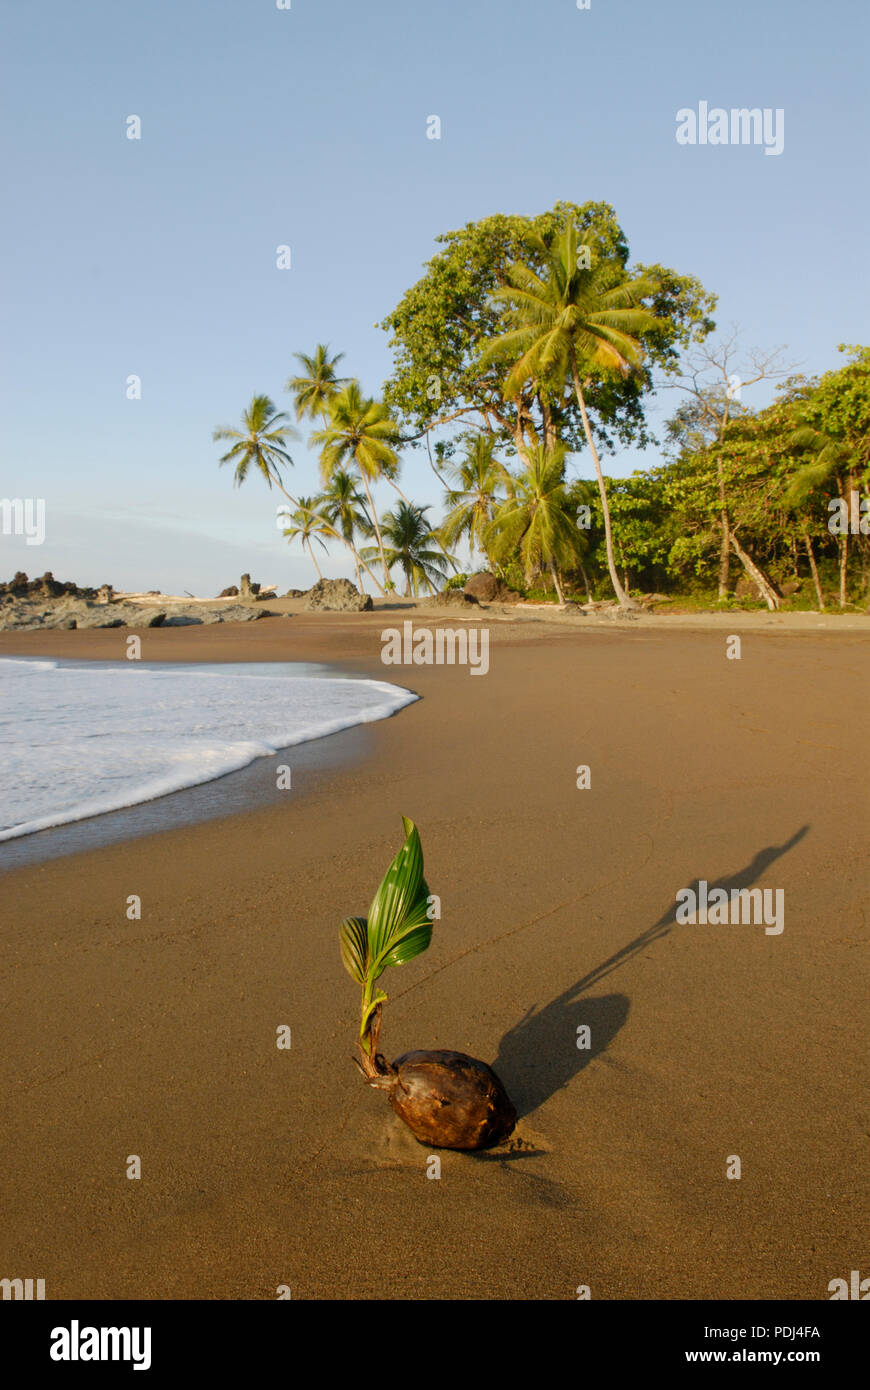 La germogliazione di cocco sulla spiaggia, parco nazionale di Corcovado, Costa Rica Foto Stock